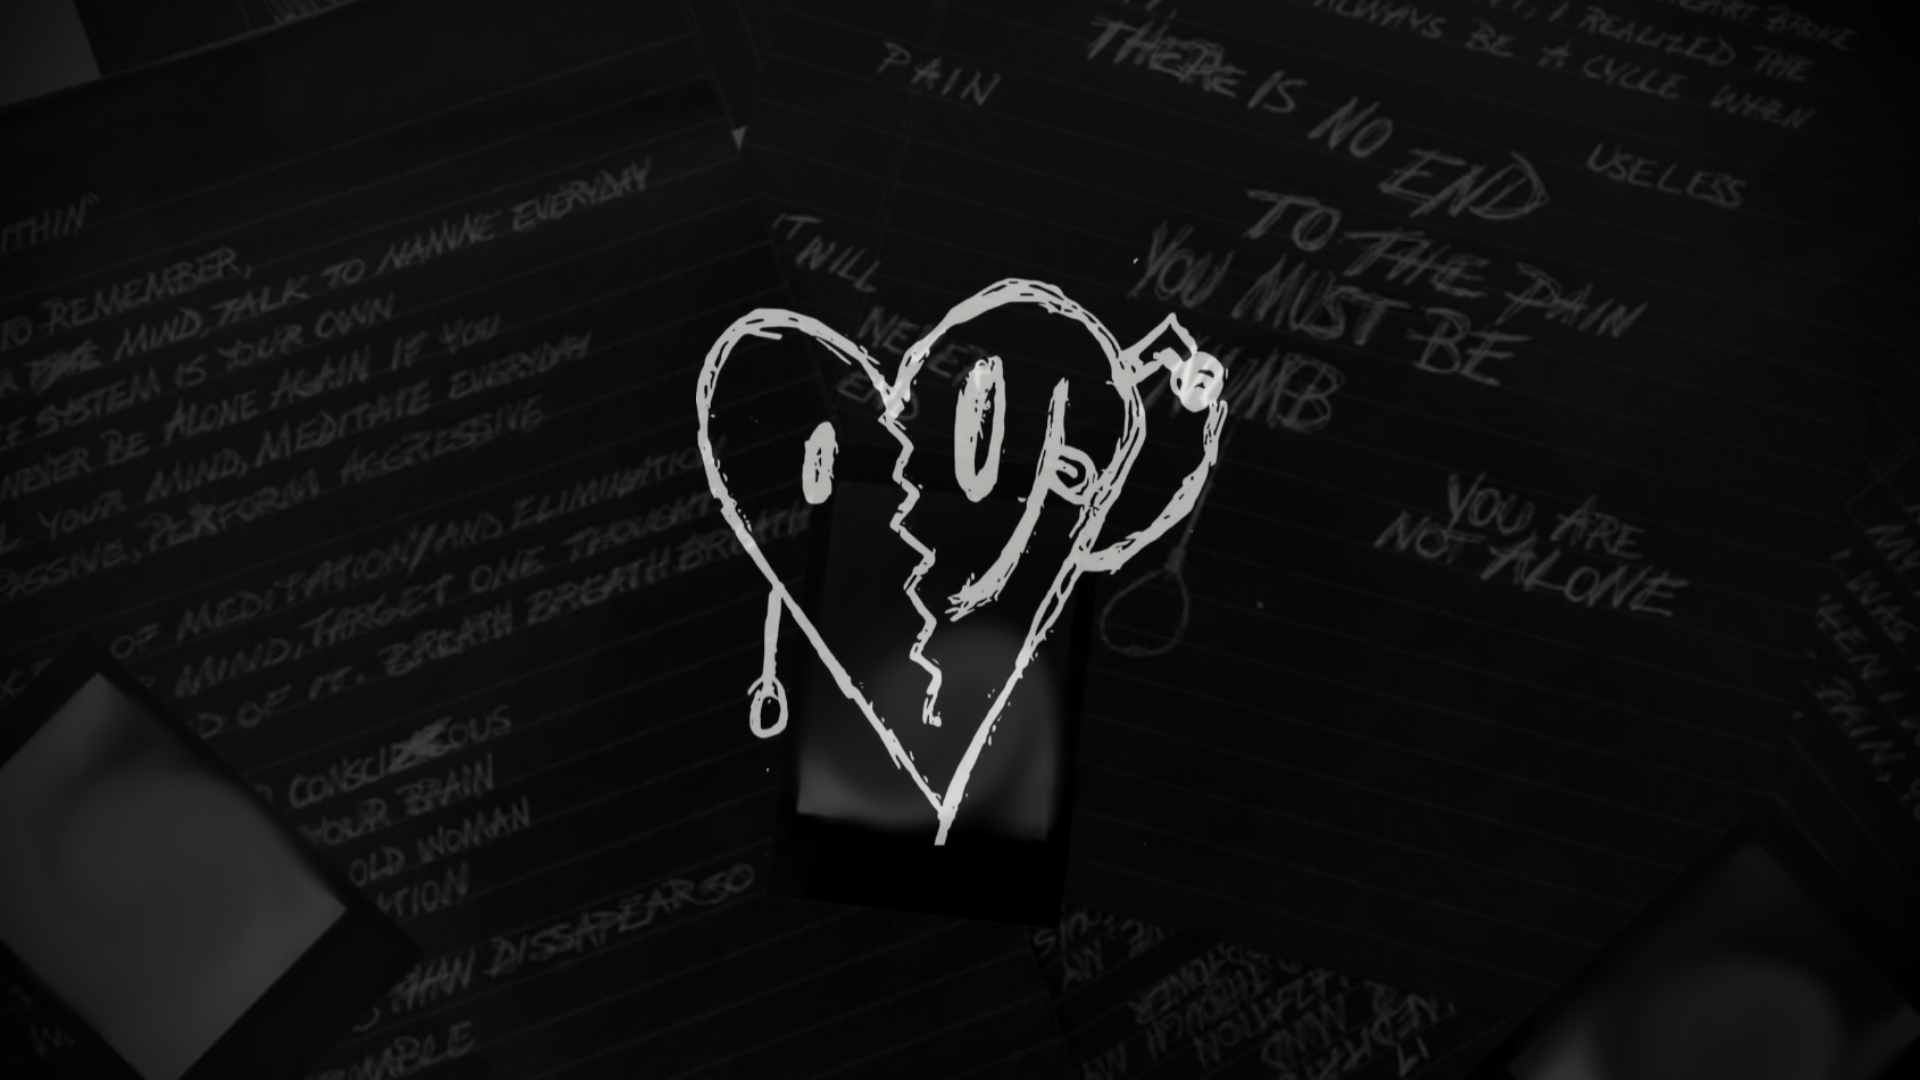 XXXTentacion Heart Wallpaper Free XXXTentacion Heart